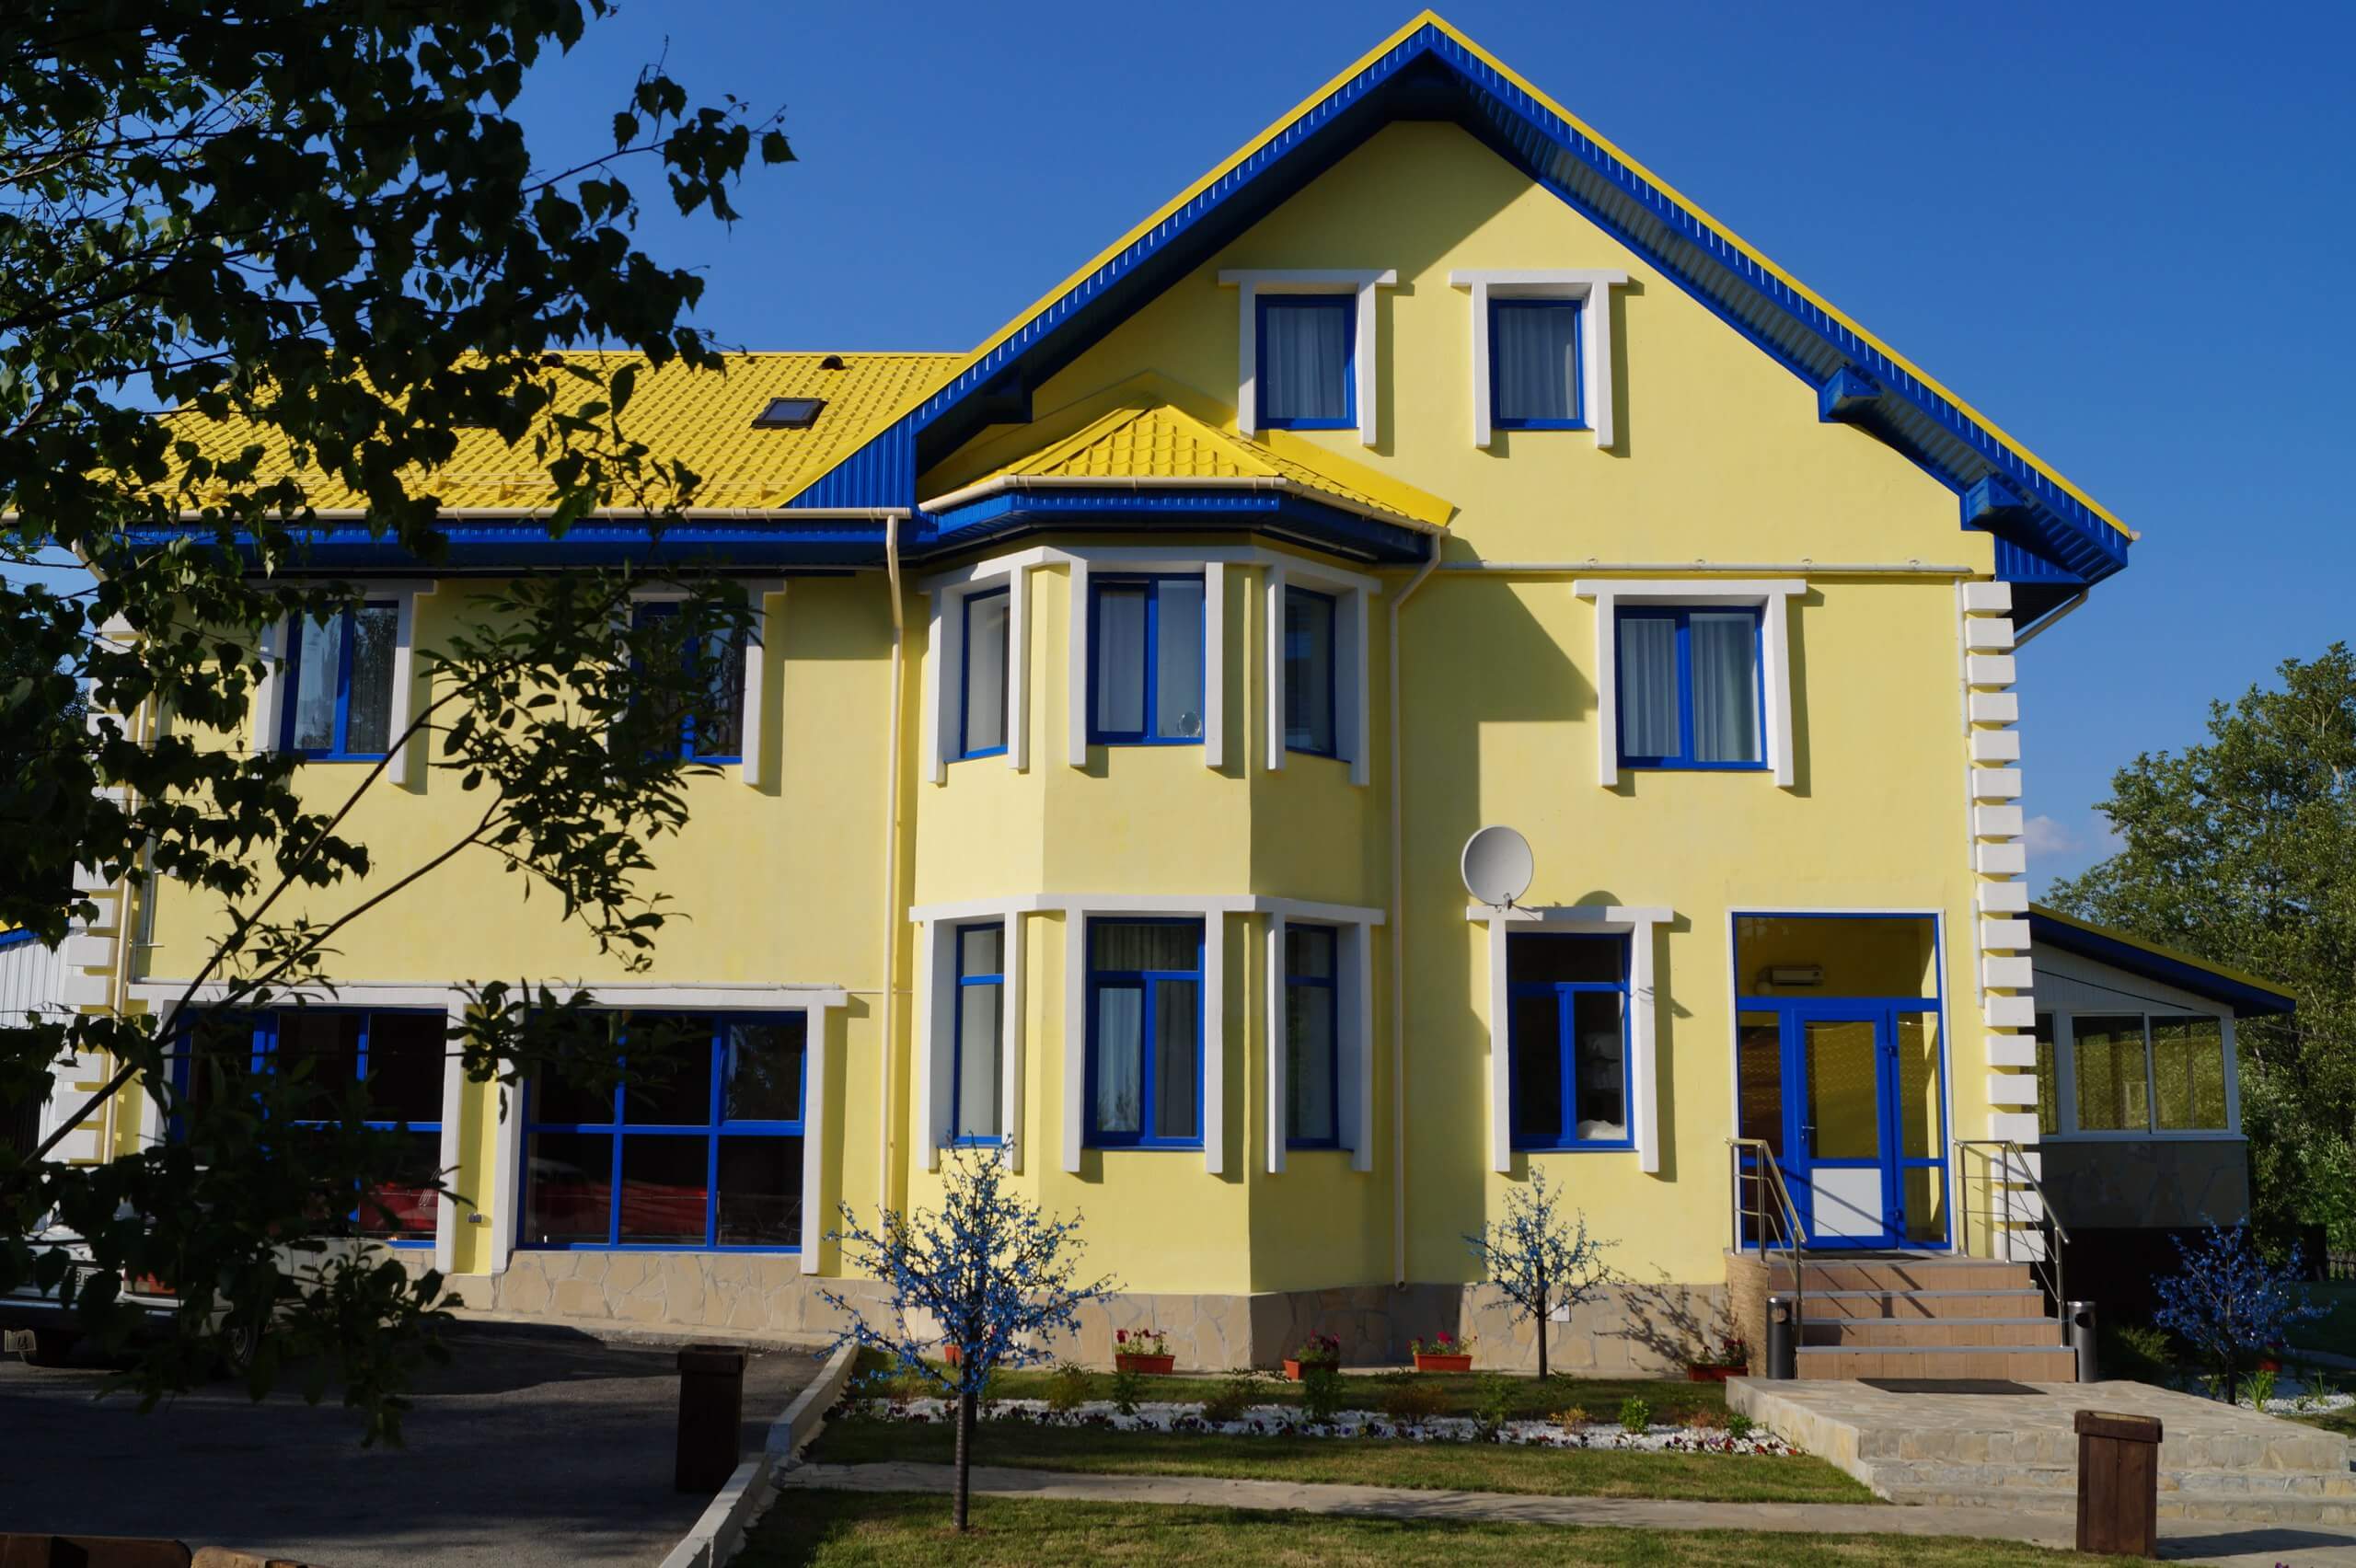 Фасад отеля окрашен в яркий желтый цвет. Оконные рамы - синие.